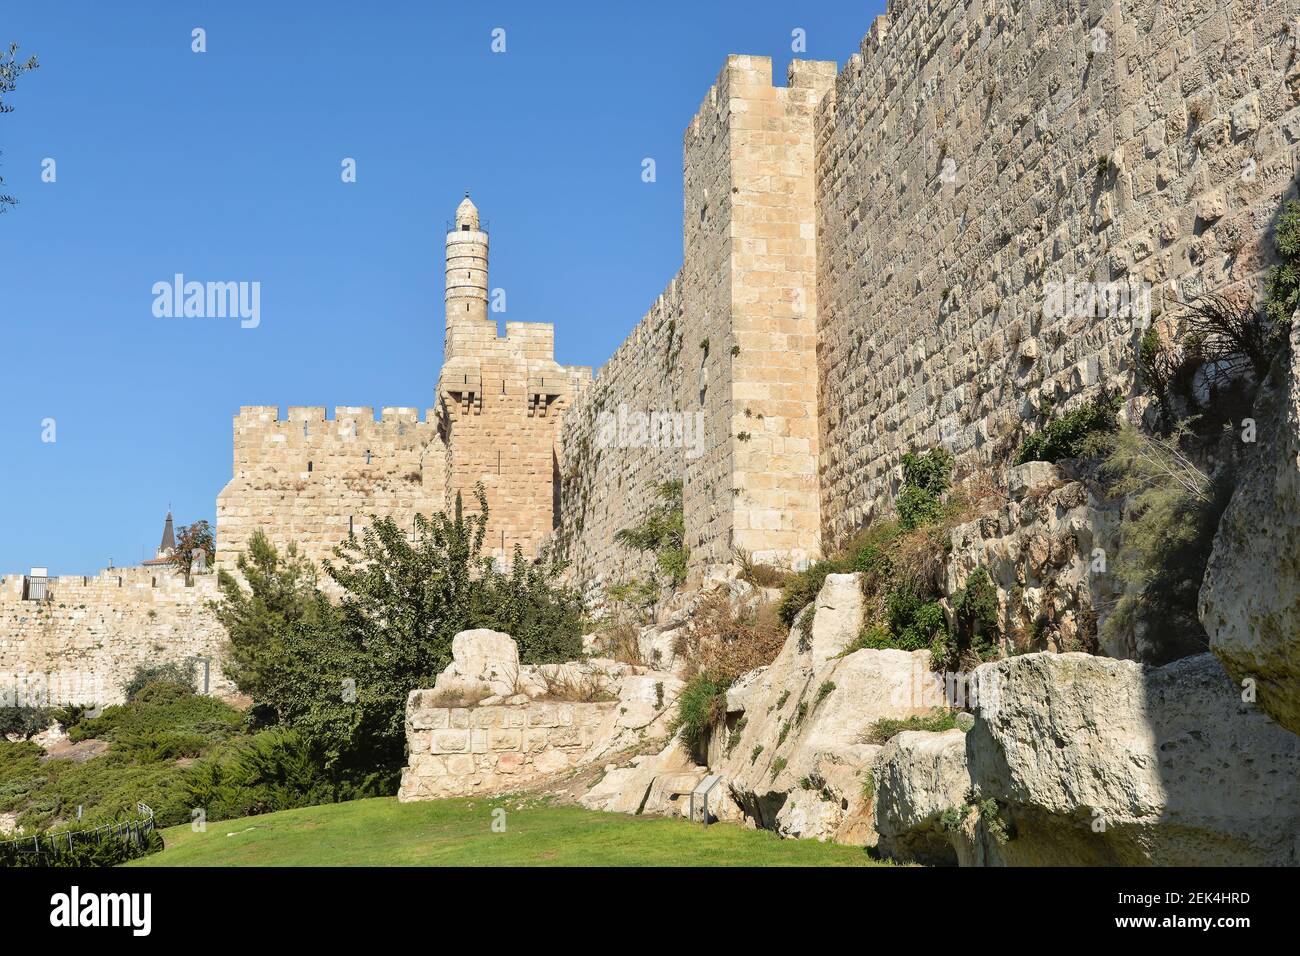 Muro occidental de la Ciudad Vieja de Jerusalén. Una muralla del siglo XVI construida por Suleiman el magnífico. Foto de stock